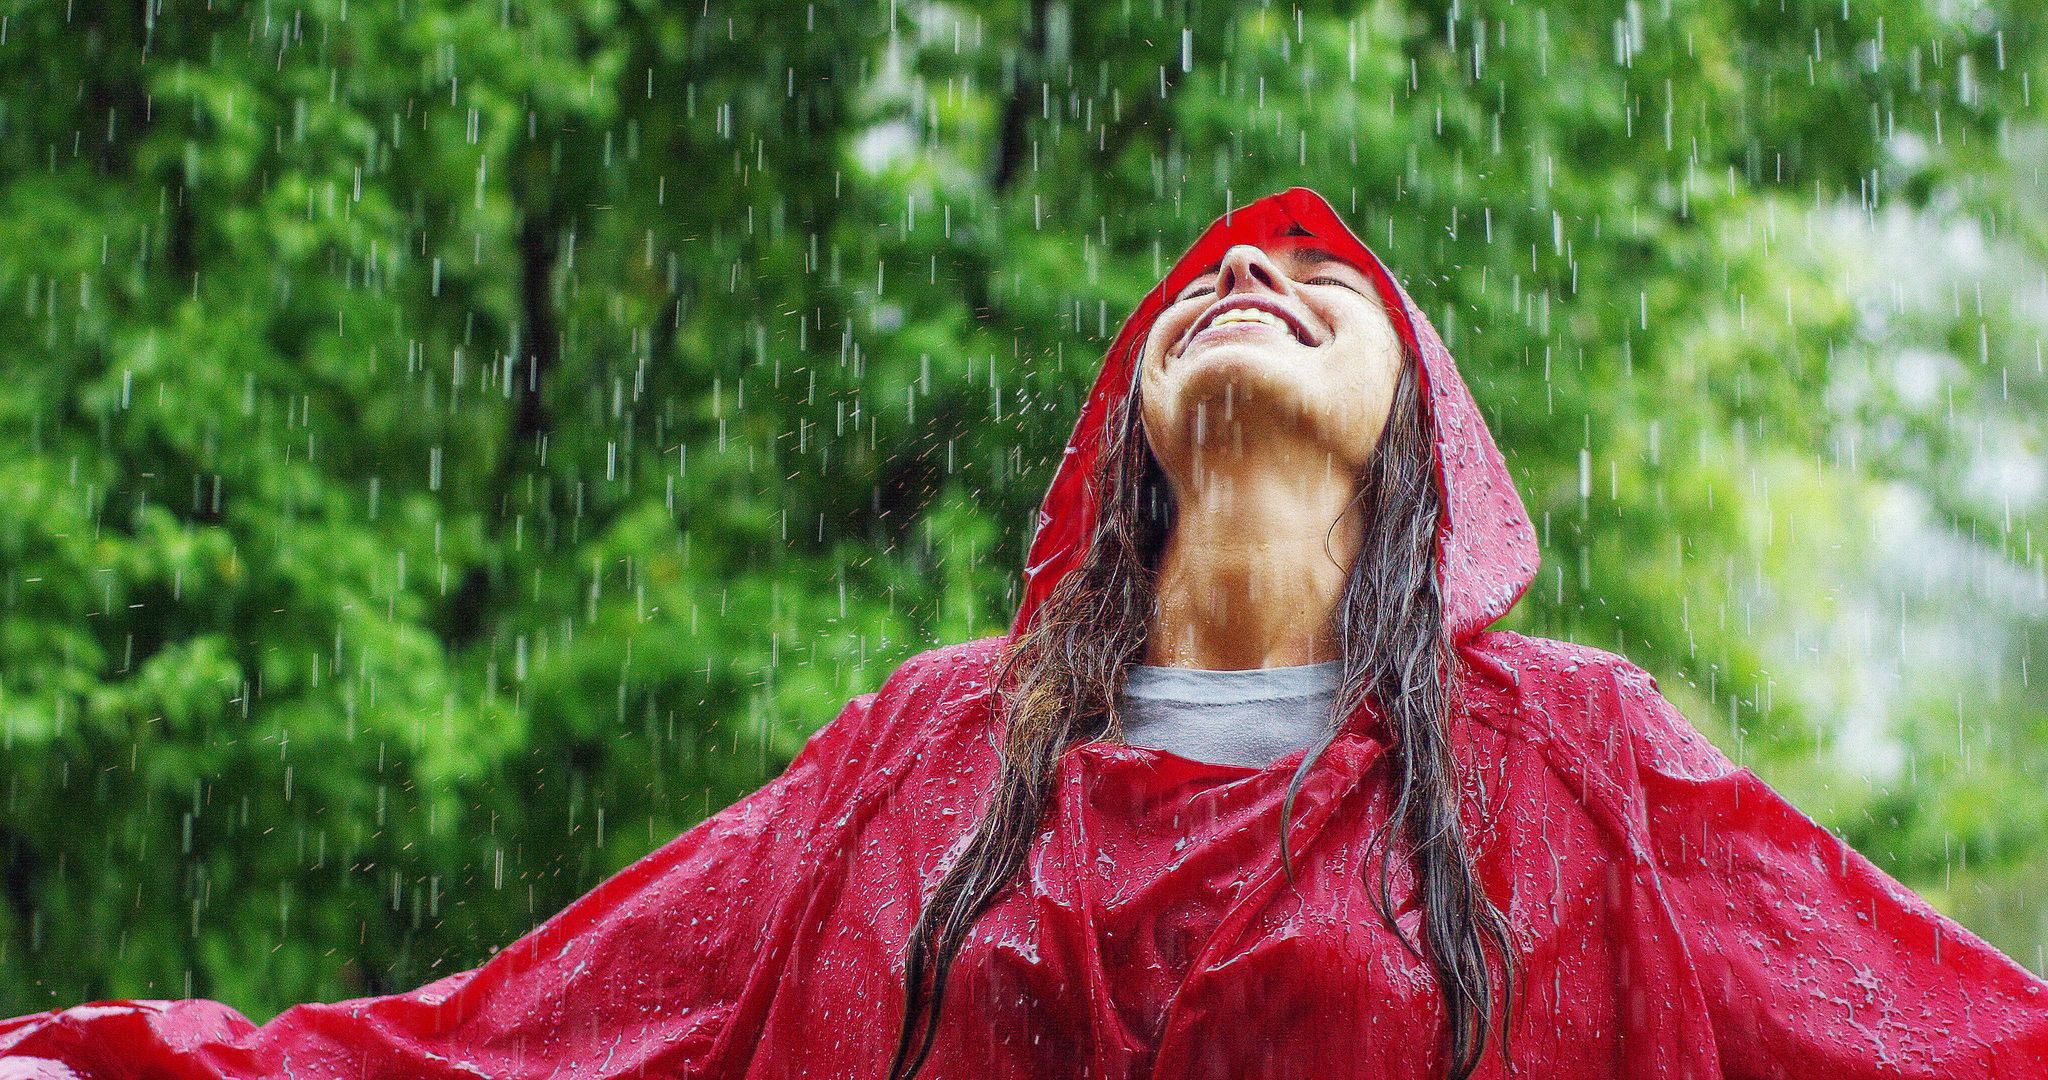 A woman enjoying the rain. | Source: Shutterstock